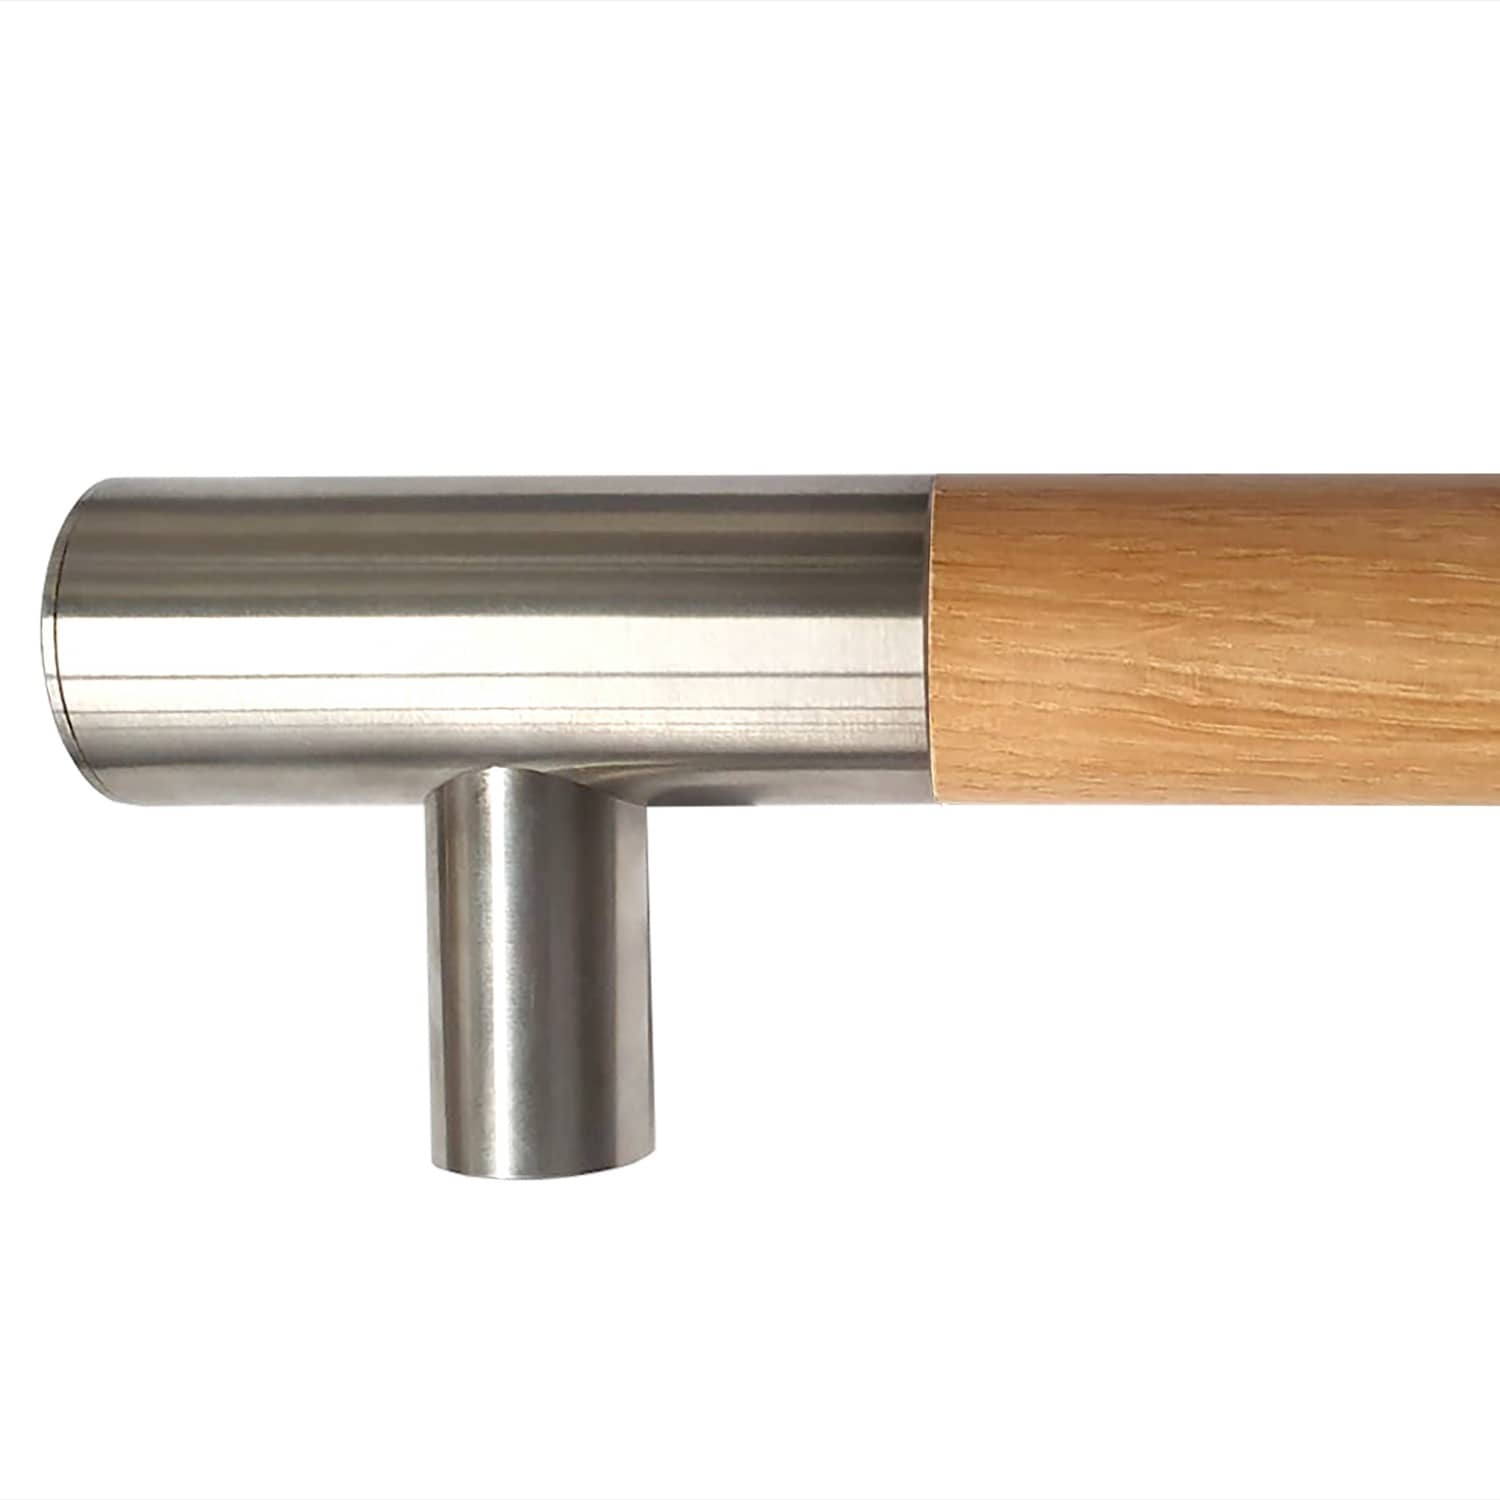 Main courante en bois de chêne avec supports d'extrémité